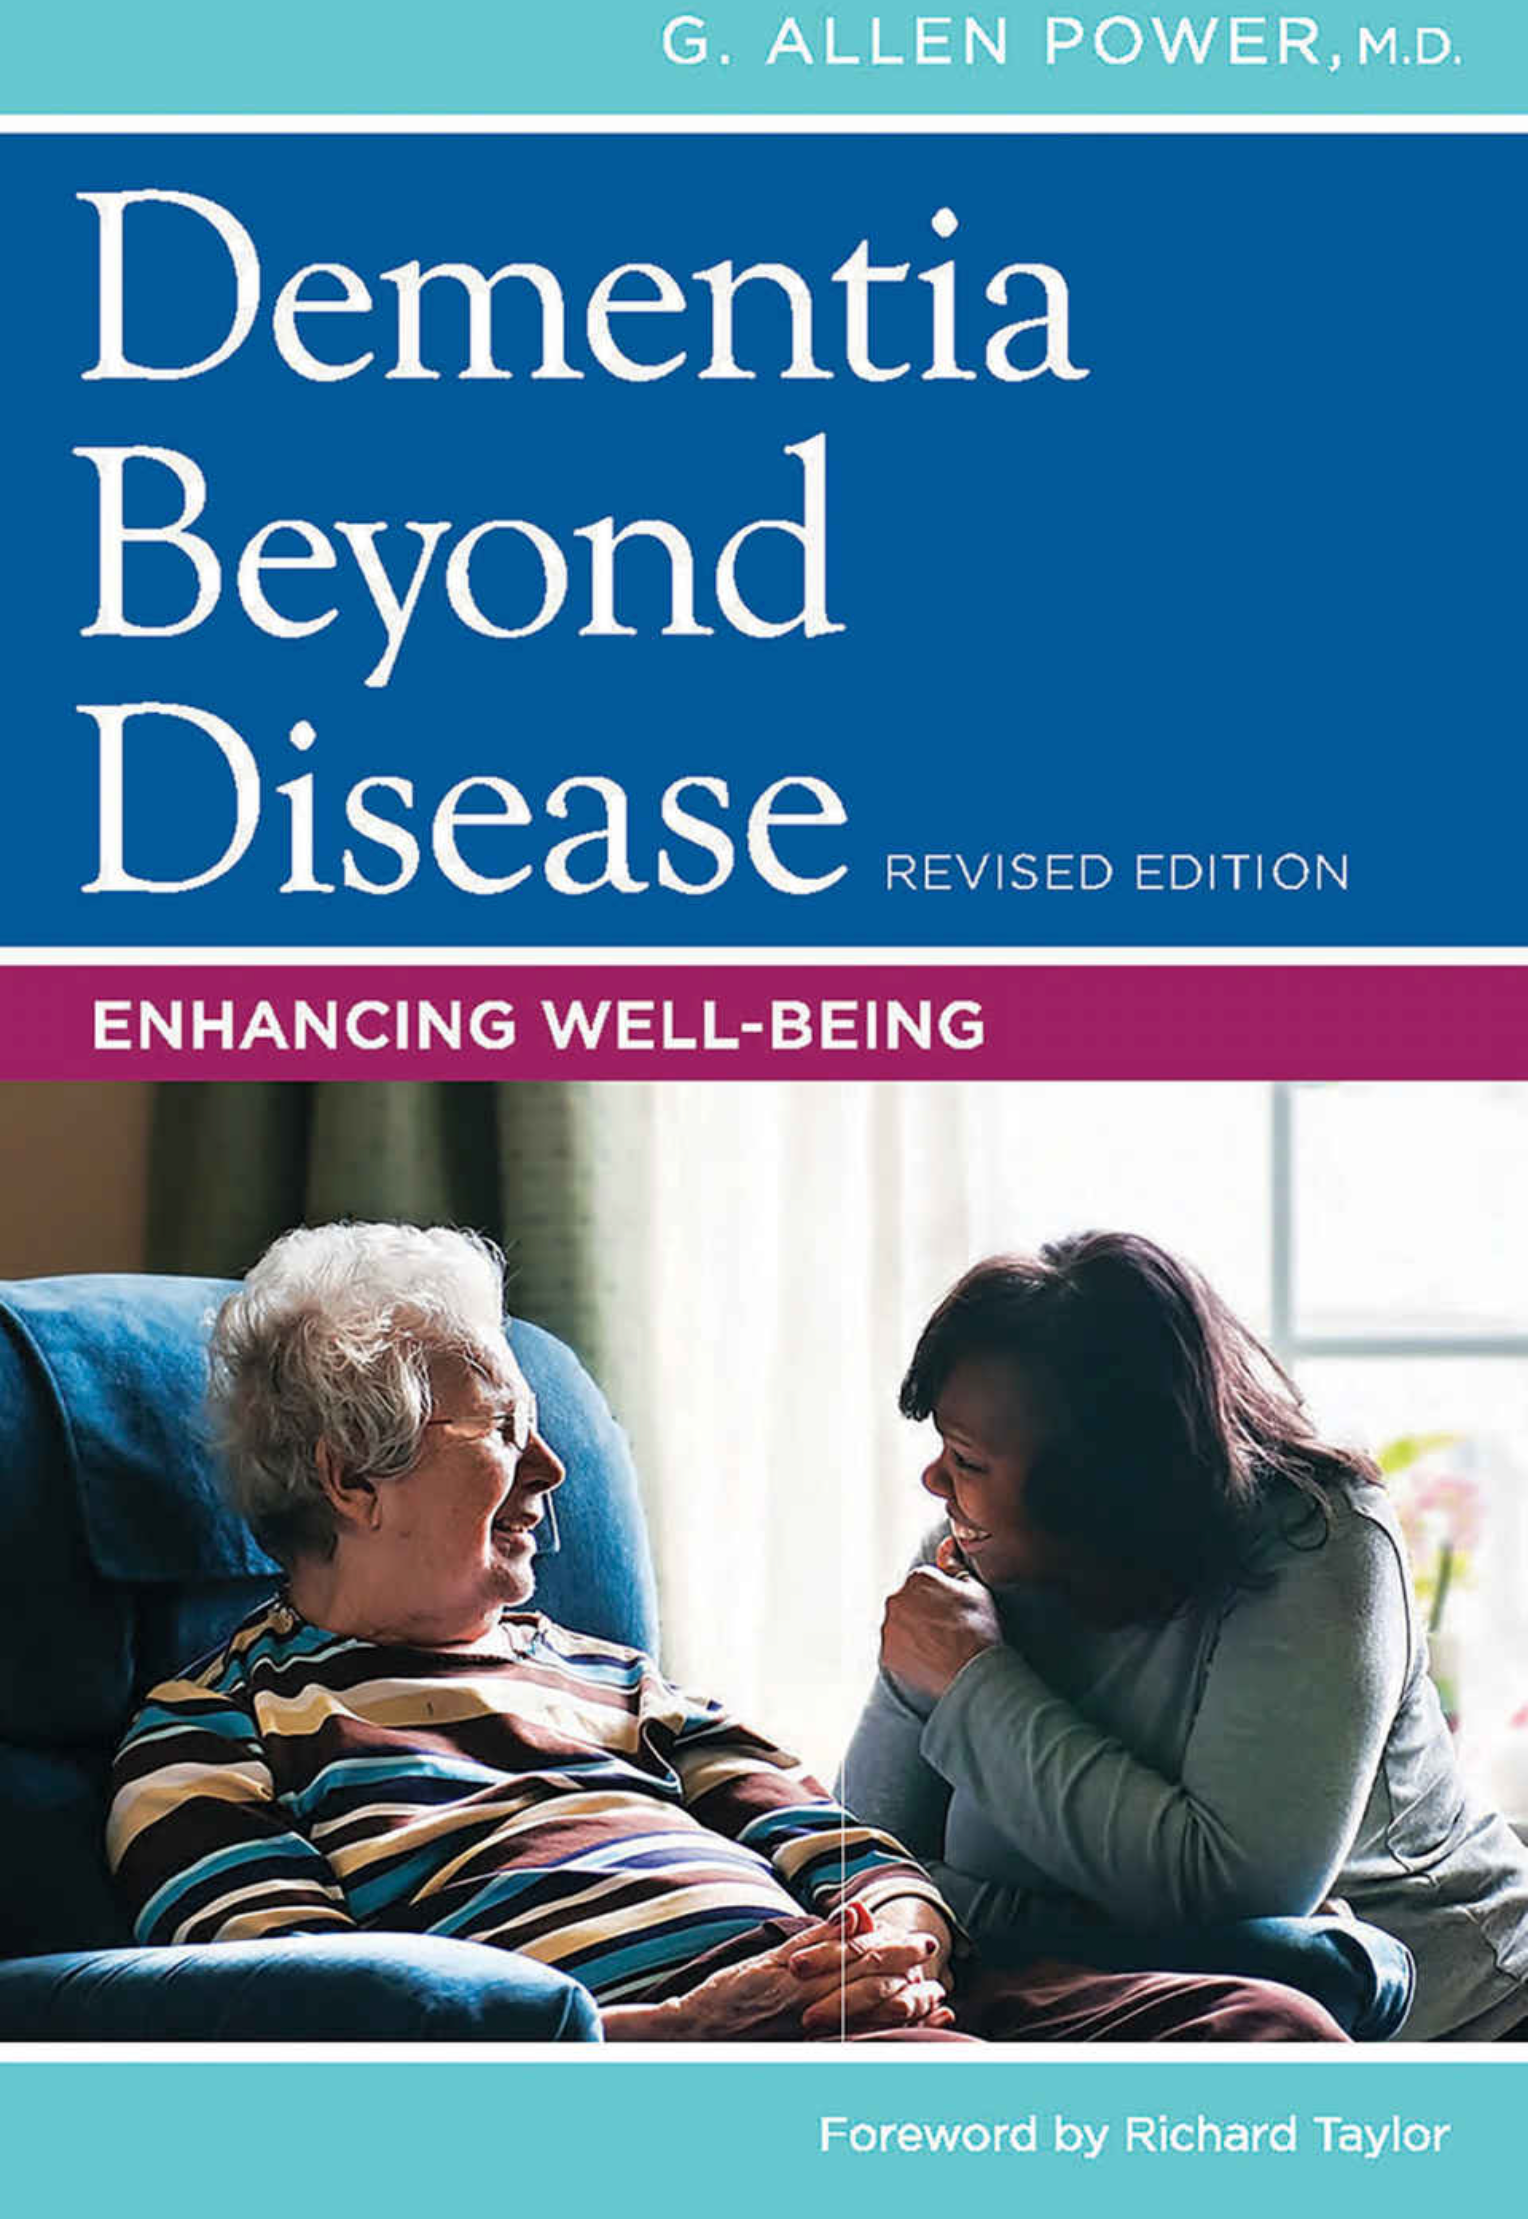 Dementia Beyond Disease- Al Power